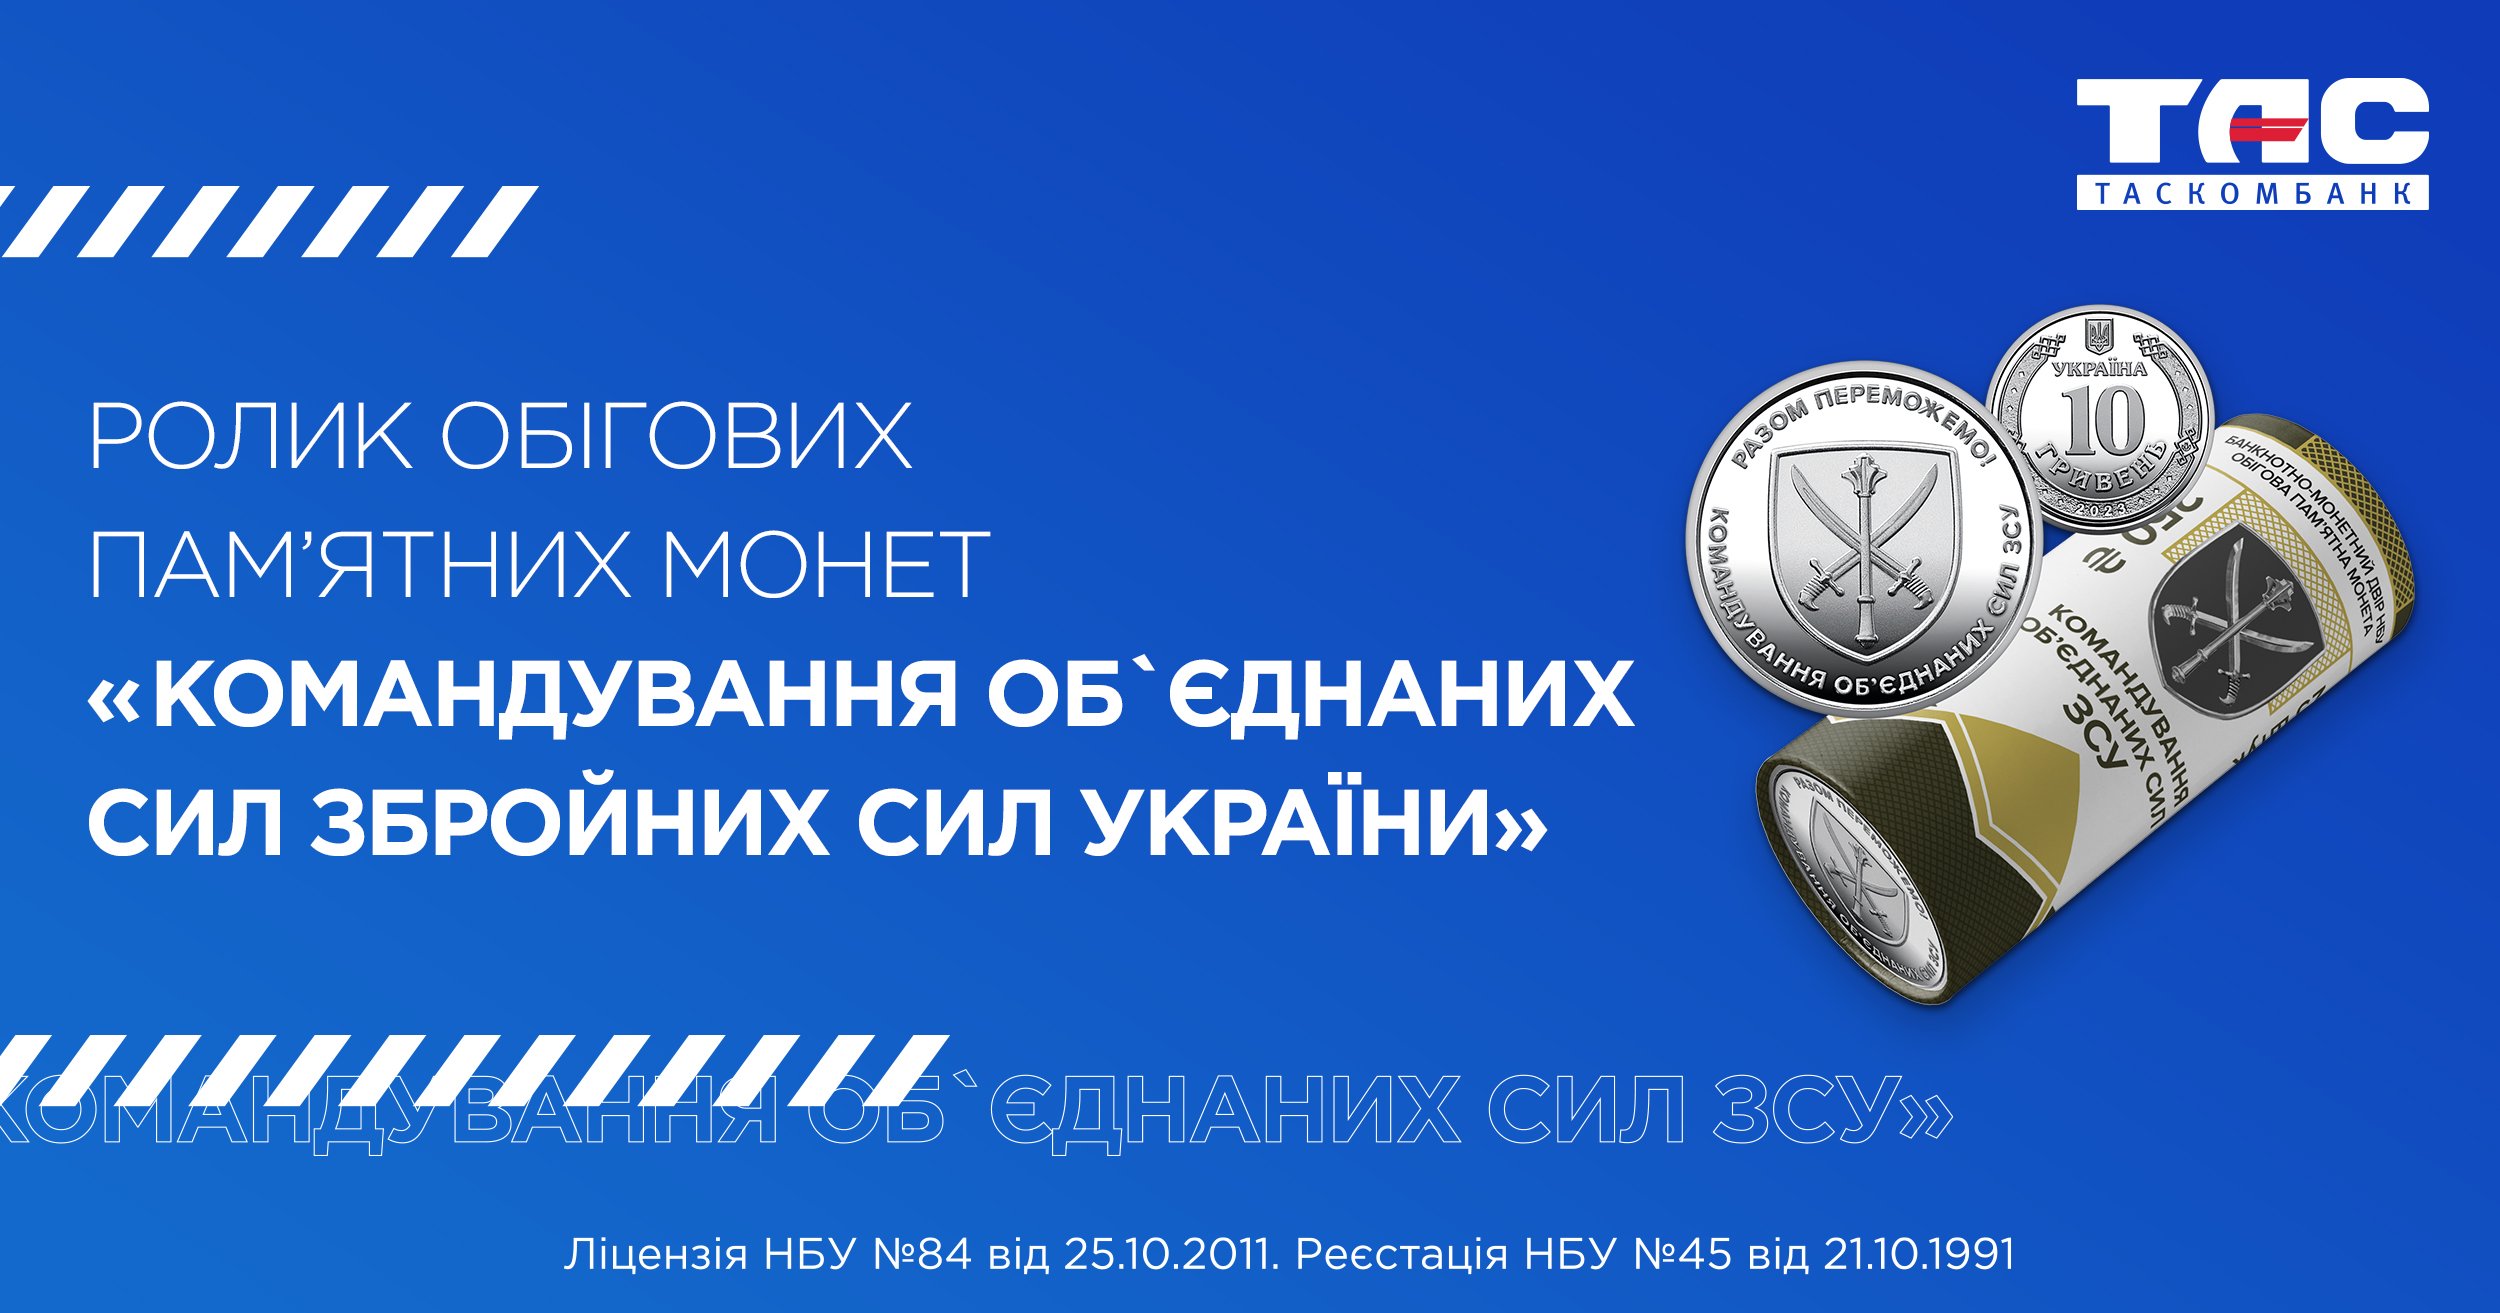 Ролик обігових пам’ятних монет “Командування об’єднаних сил Збройних Сил України” 